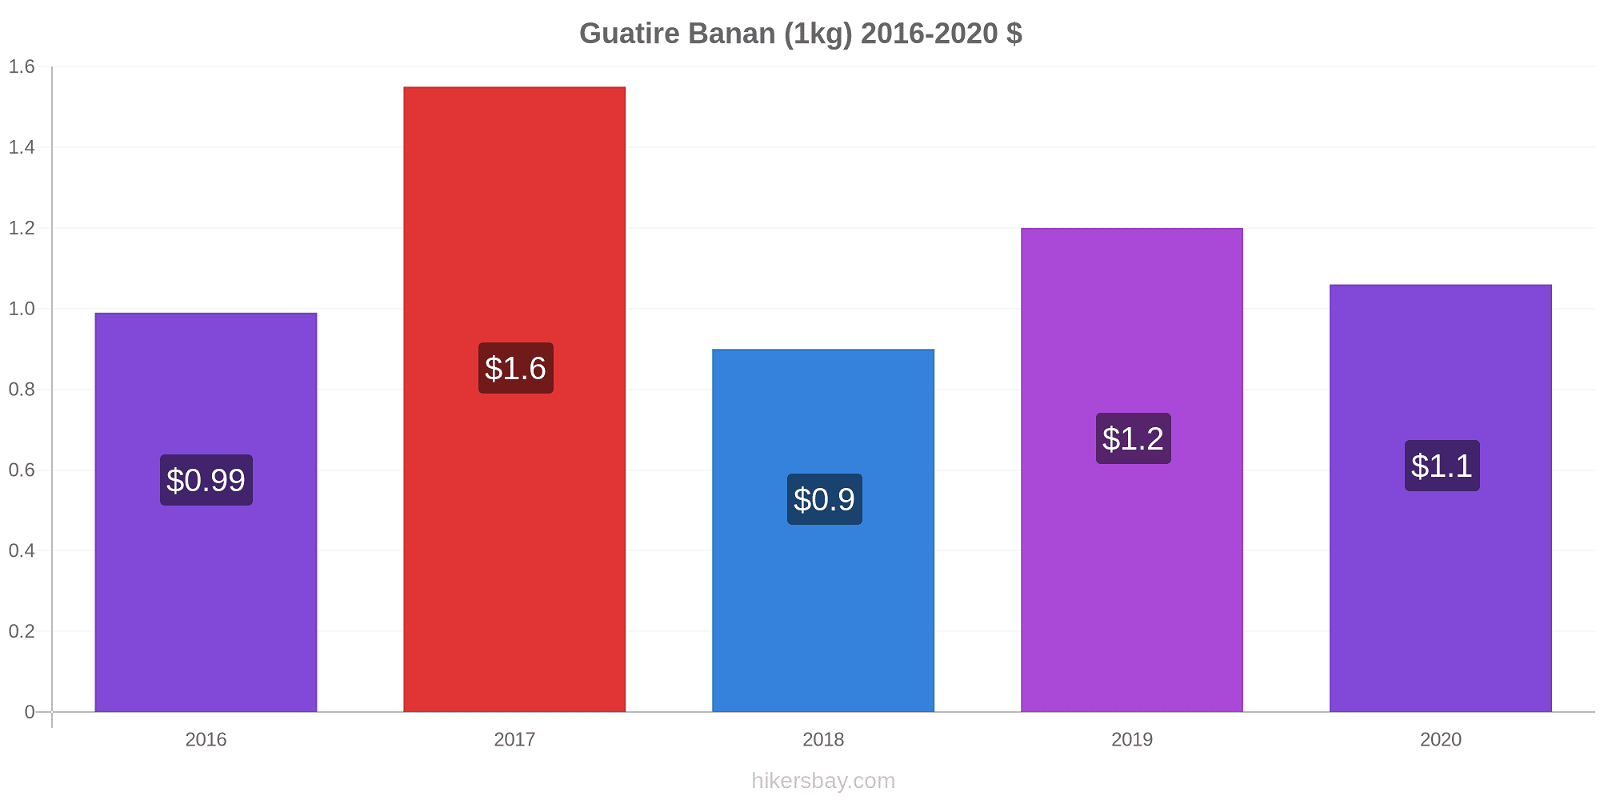 Guatire prisförändringar Banan (1kg) hikersbay.com